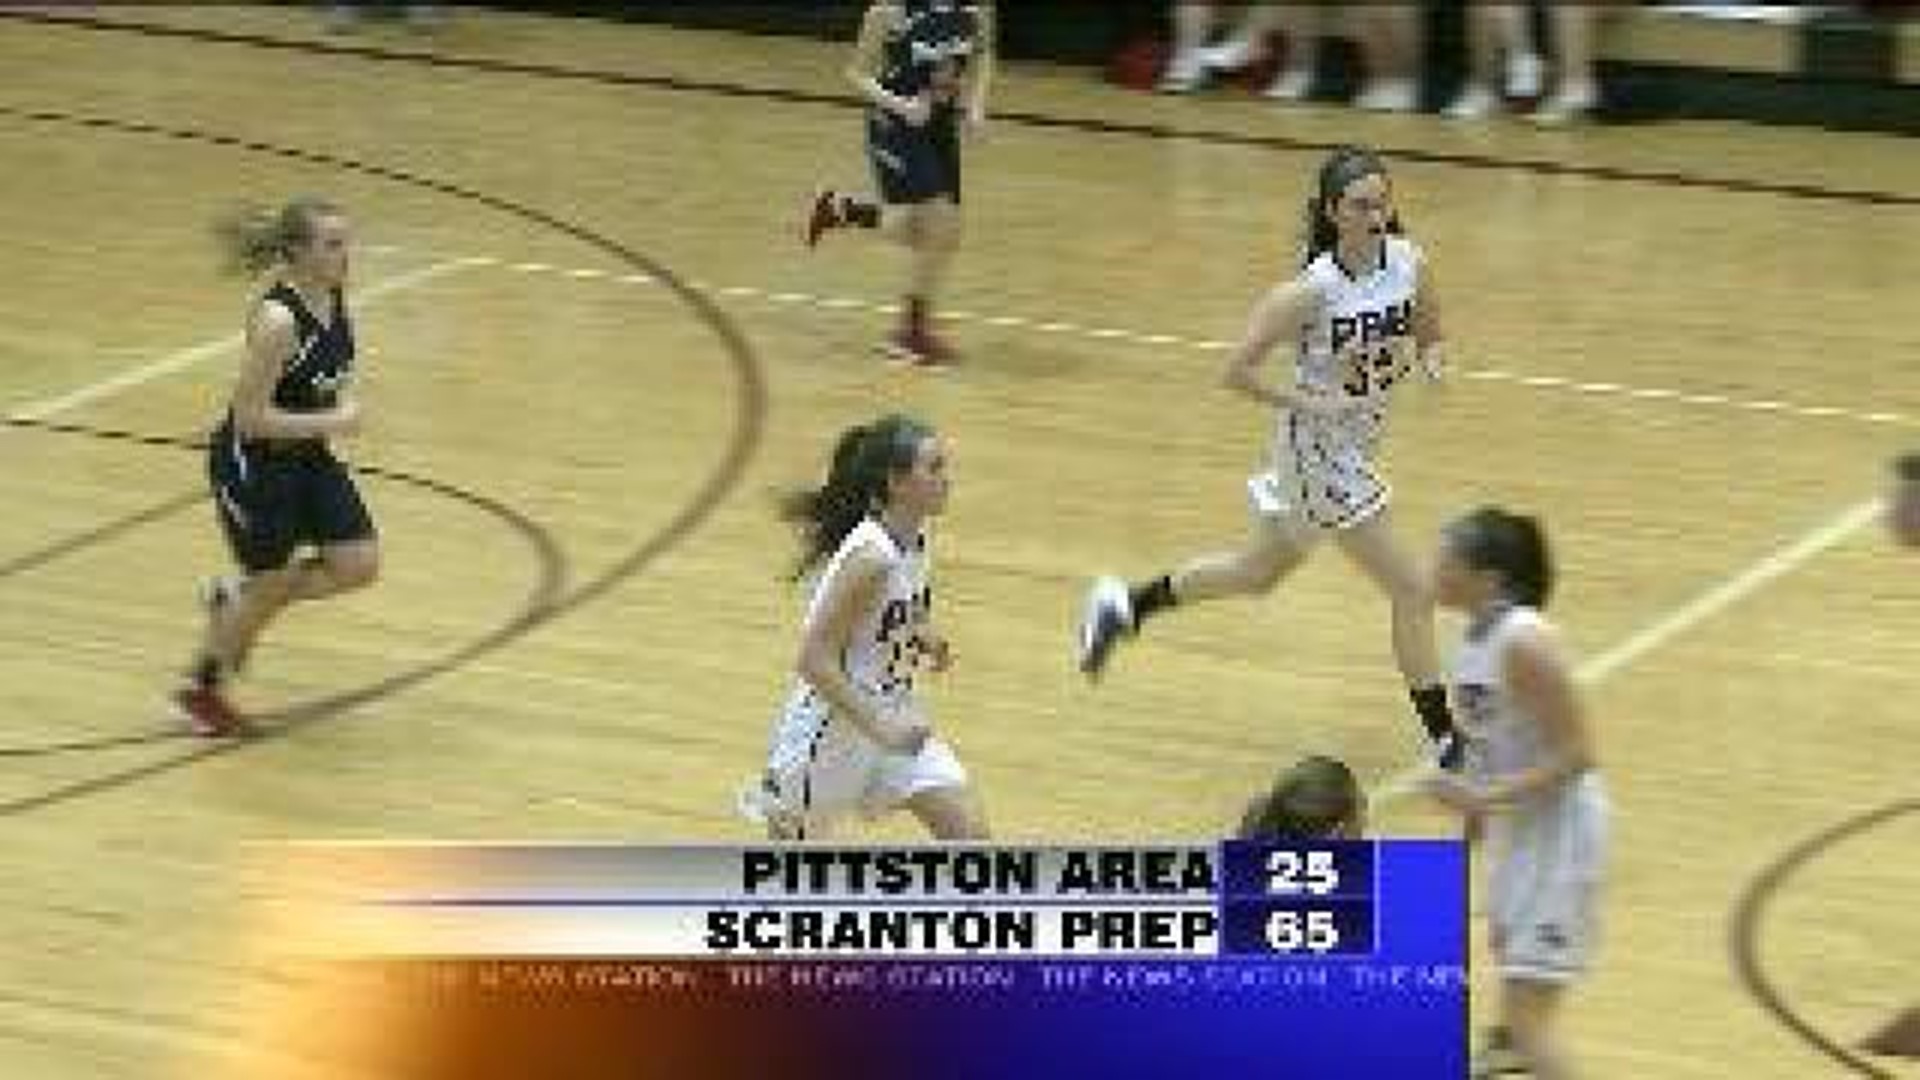 Prep beats Pittston Area